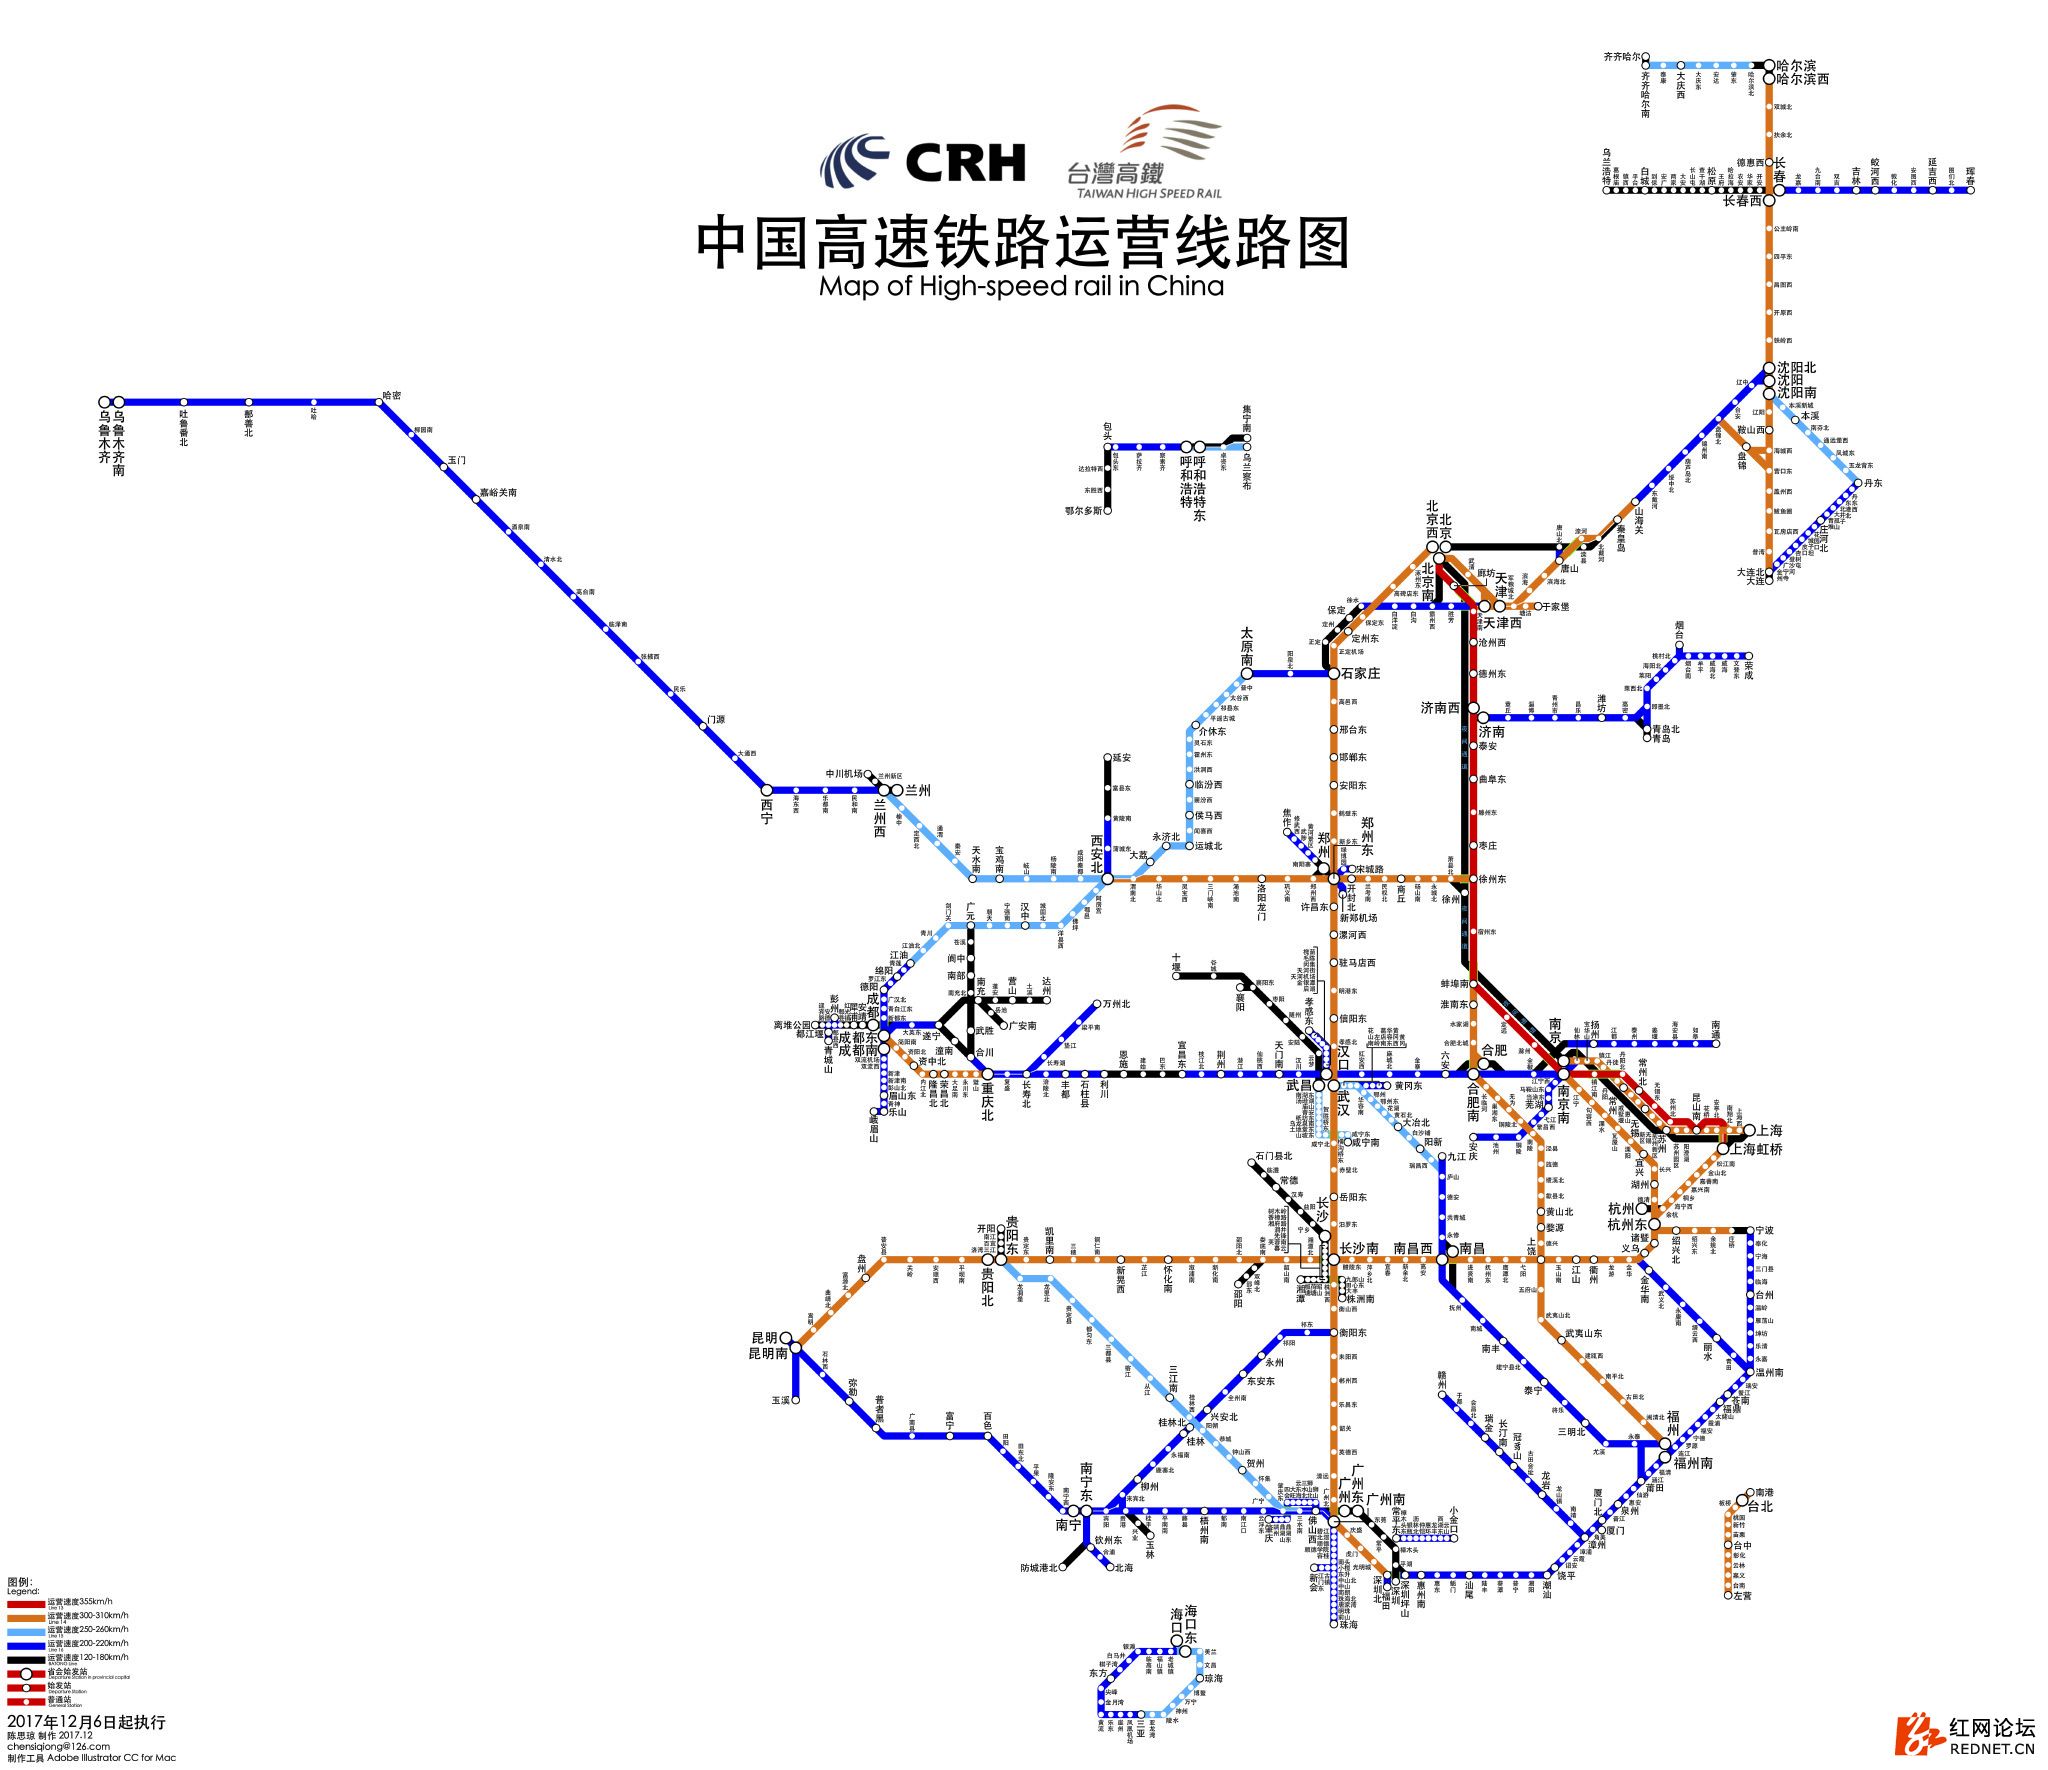 中国高速铁路运营线路图2017年12月6日版